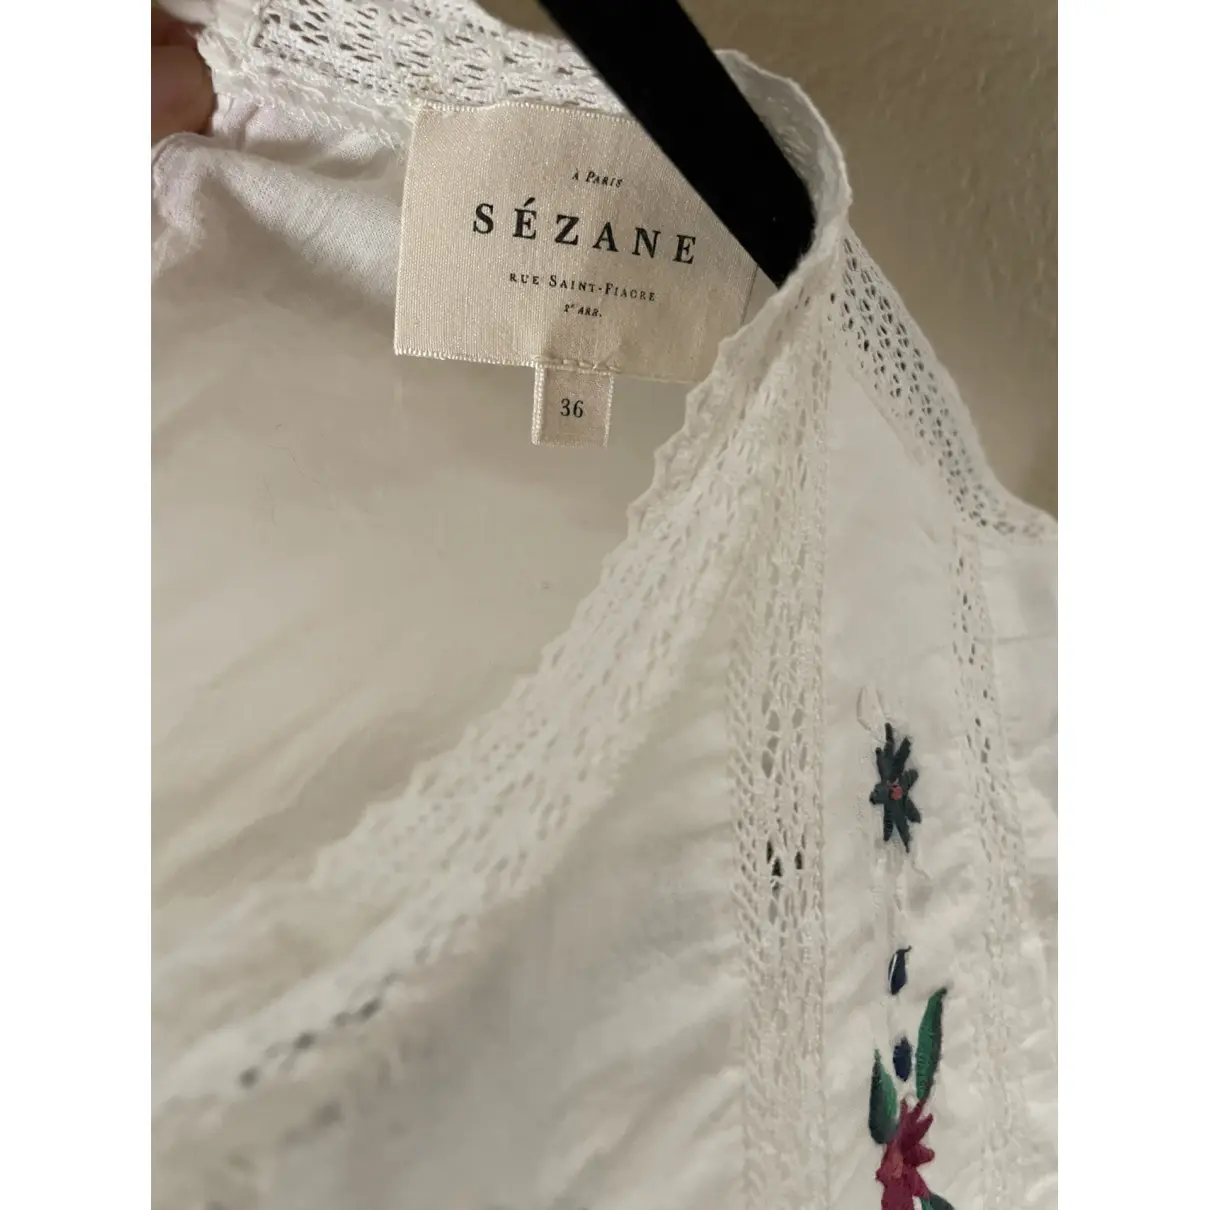 Buy Sézane Fall Winter 2019 blouse online